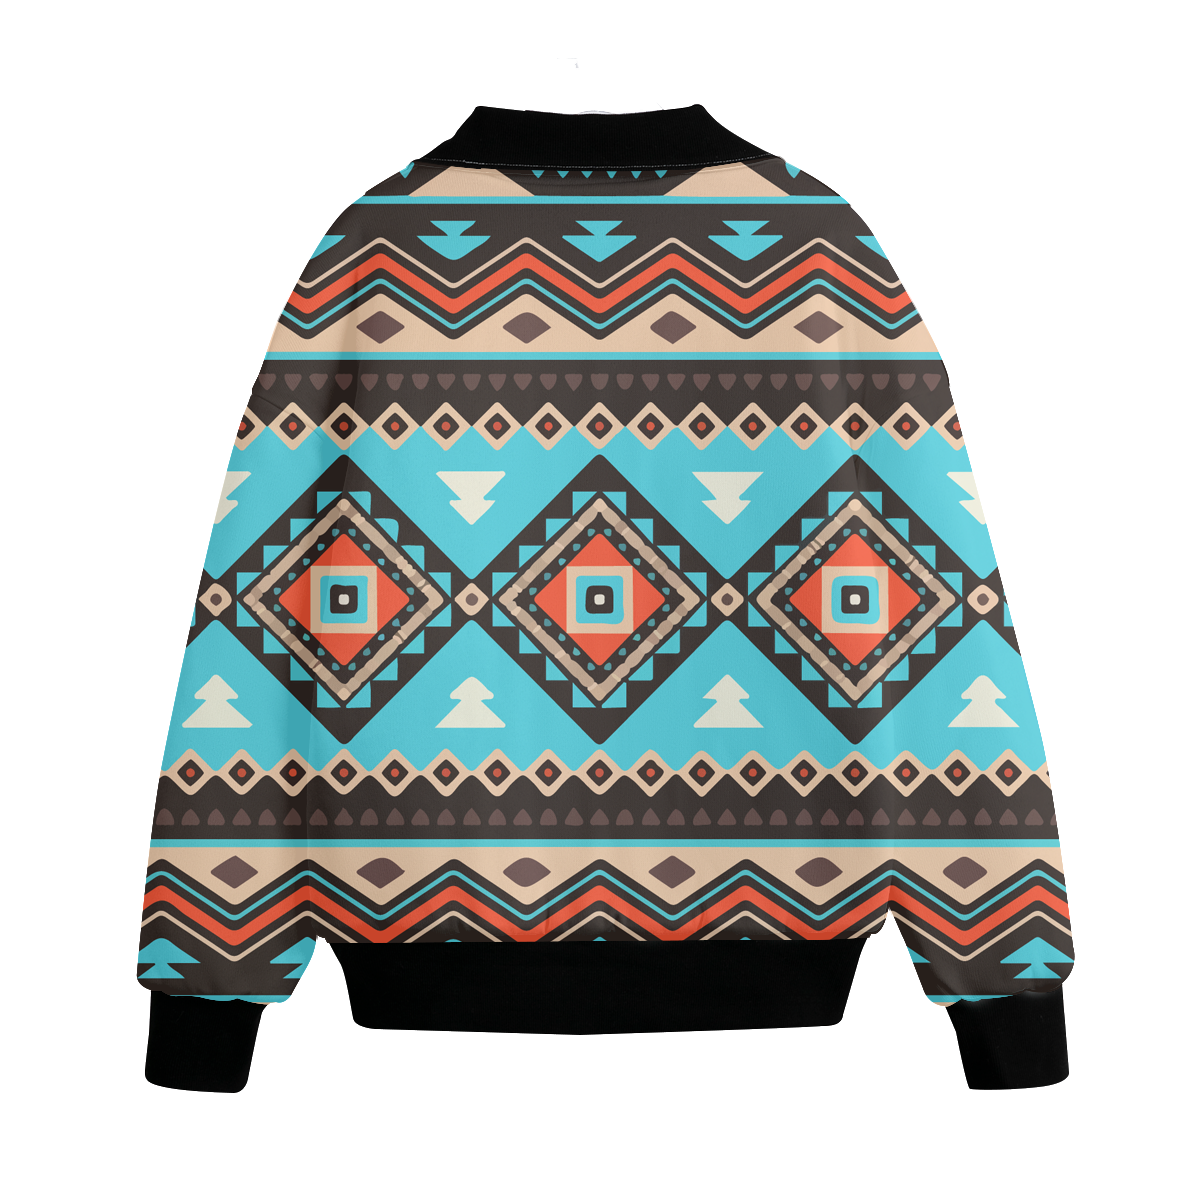 Powwow Storegb nat00319 pattern native american unisex knitted fleece lapel outwear